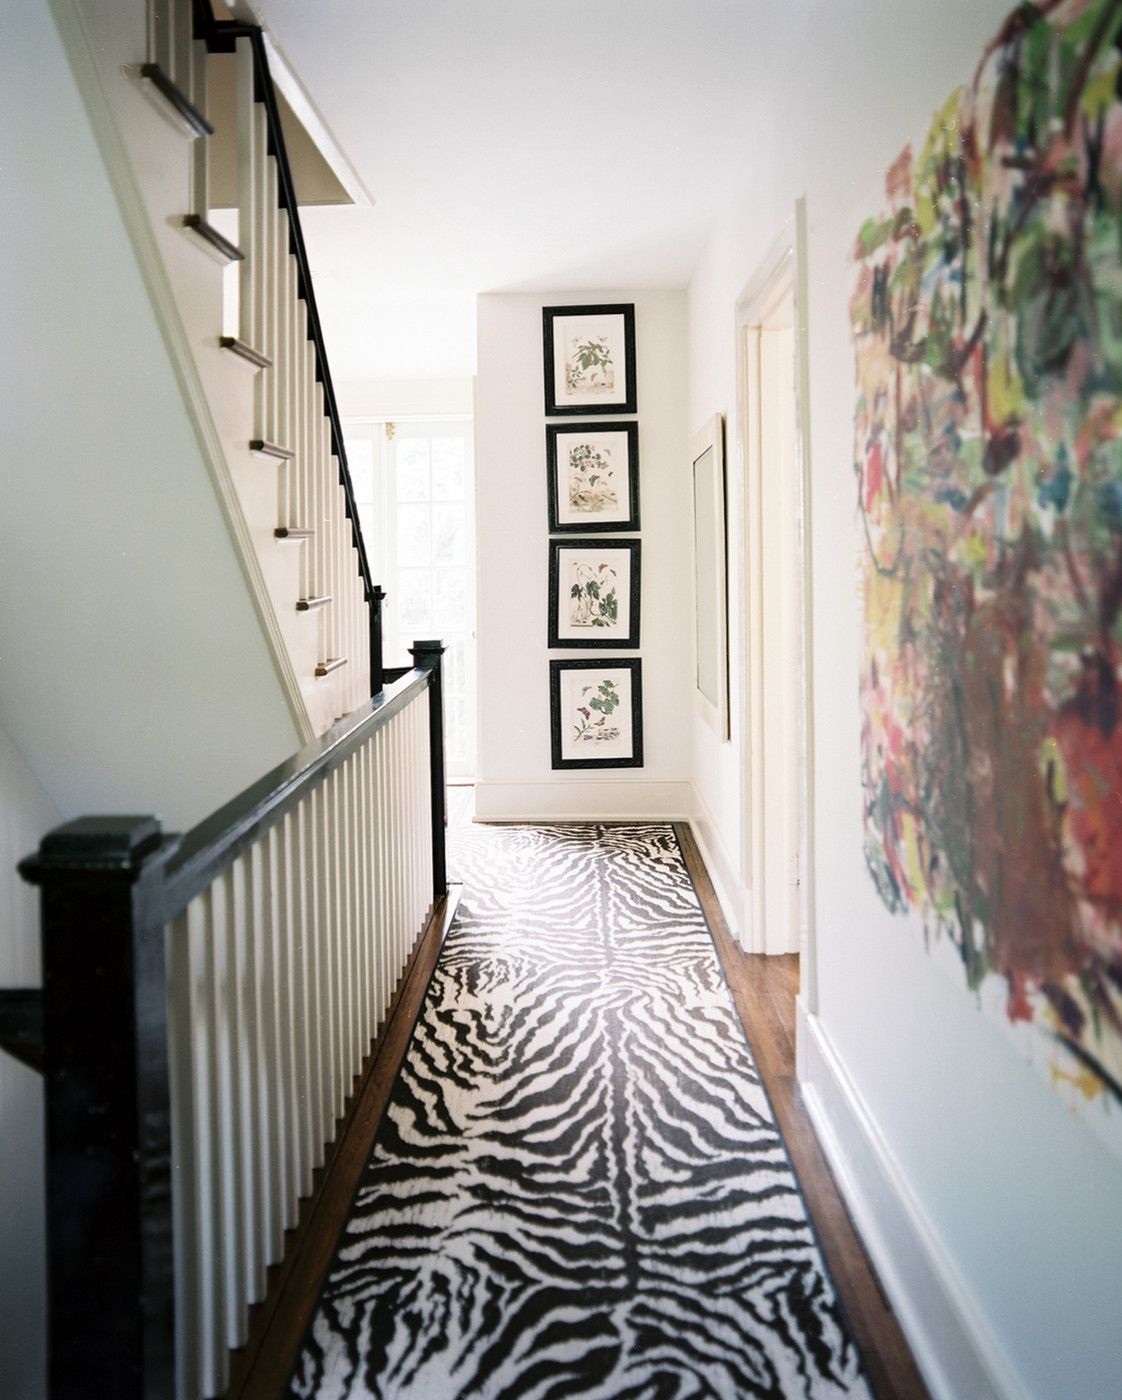 Flooring Lovely Hallway Runners For Floor Decor Idea For Runner Carpets For Hallways (View 18 of 20)